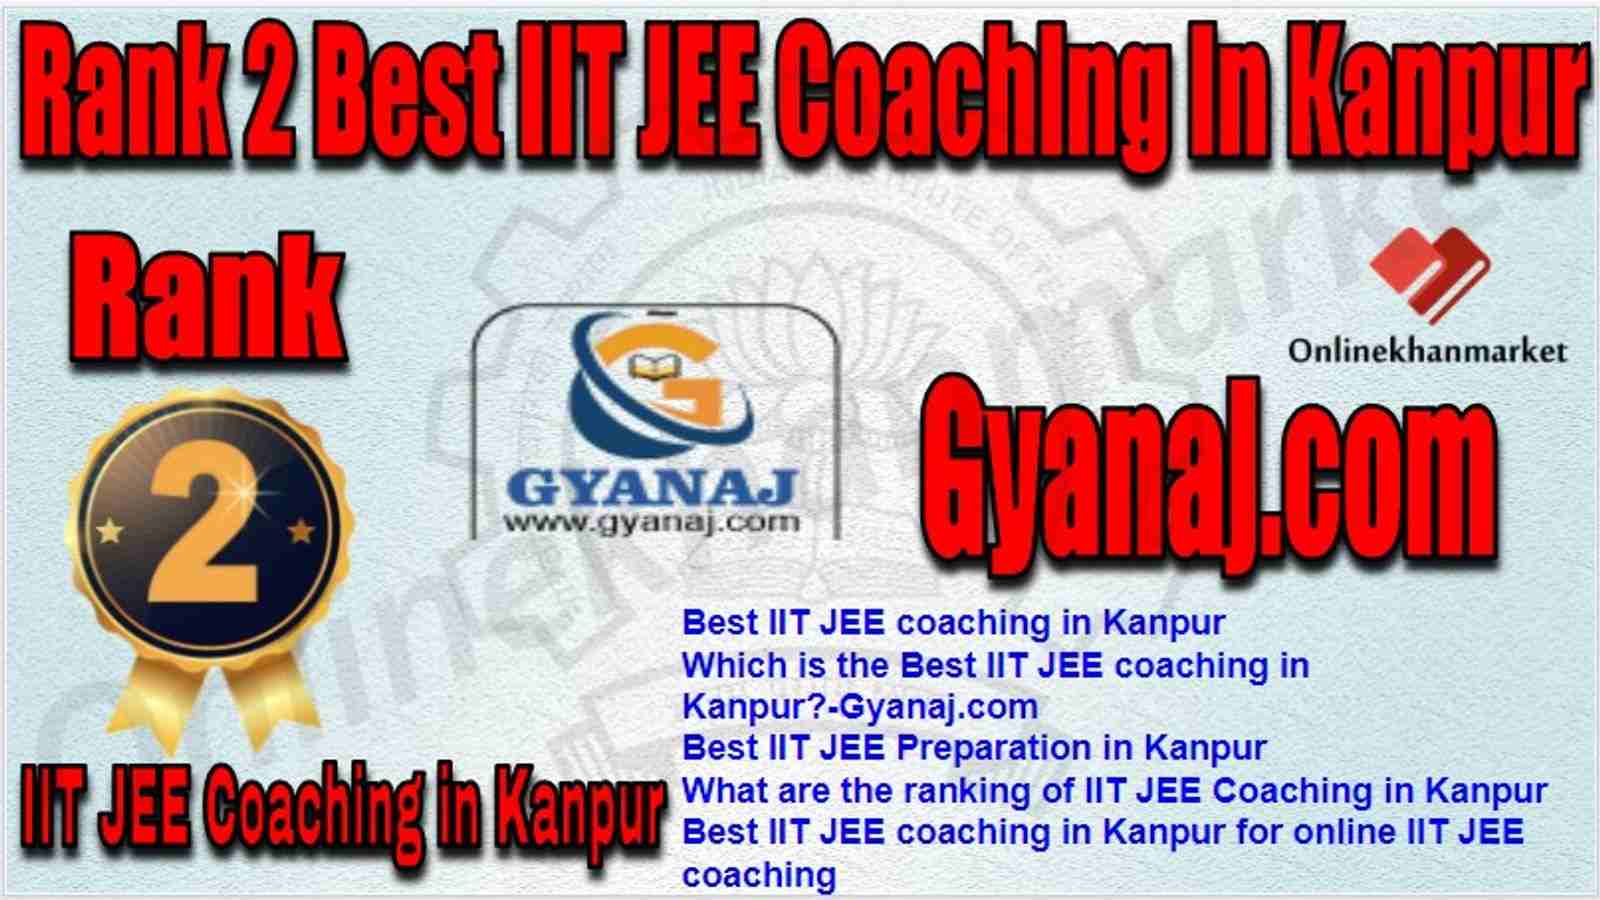 Rank 2 Best IIT JEE Coaching in kanpur